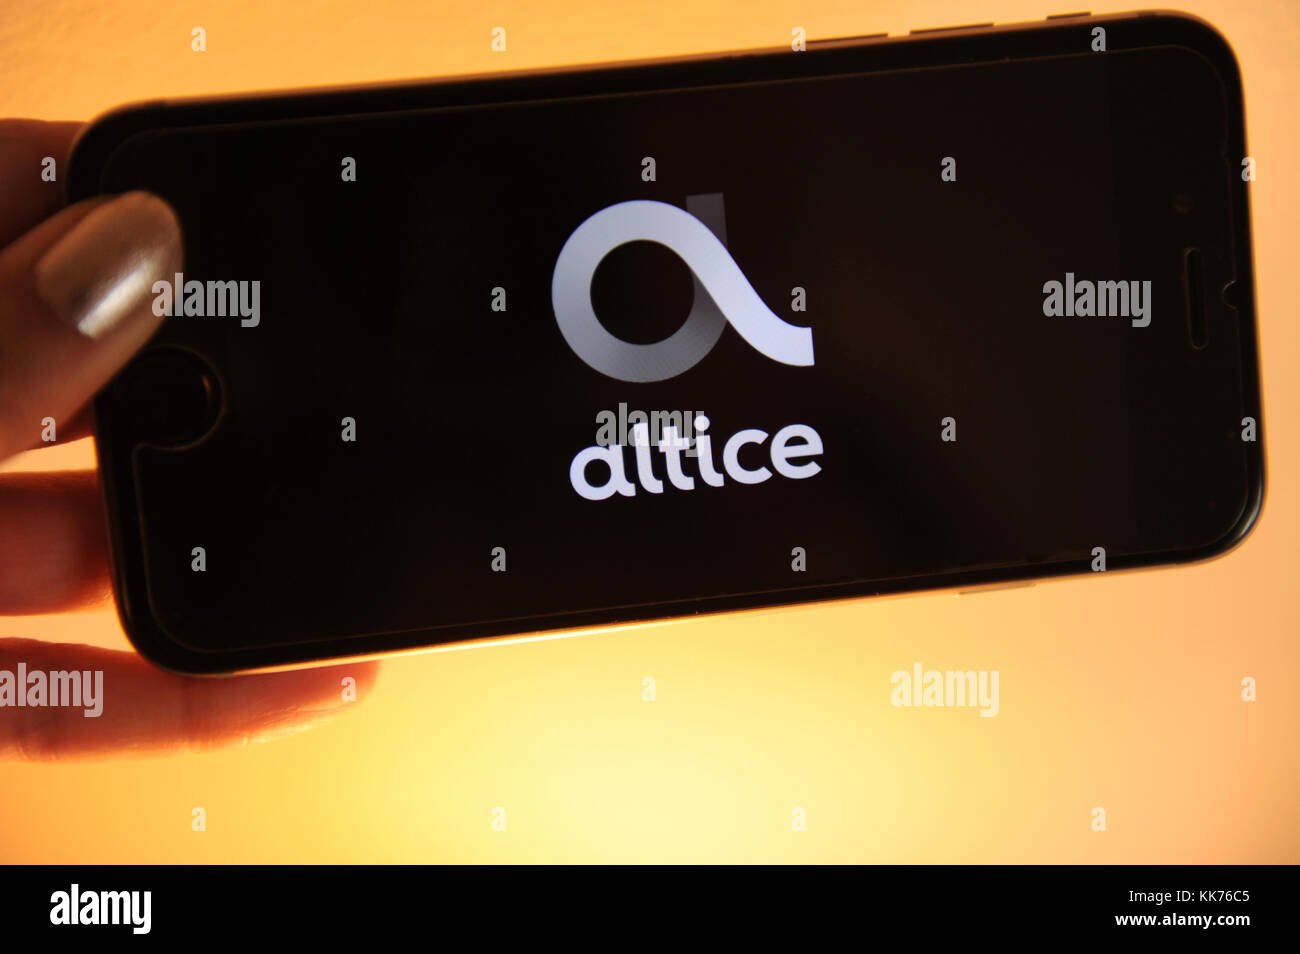 Die altice Logo auf einem Smartphone gesehen. altice ist ein multimational Telekommunikationsunternehmen in den Niederlanden Stockfoto